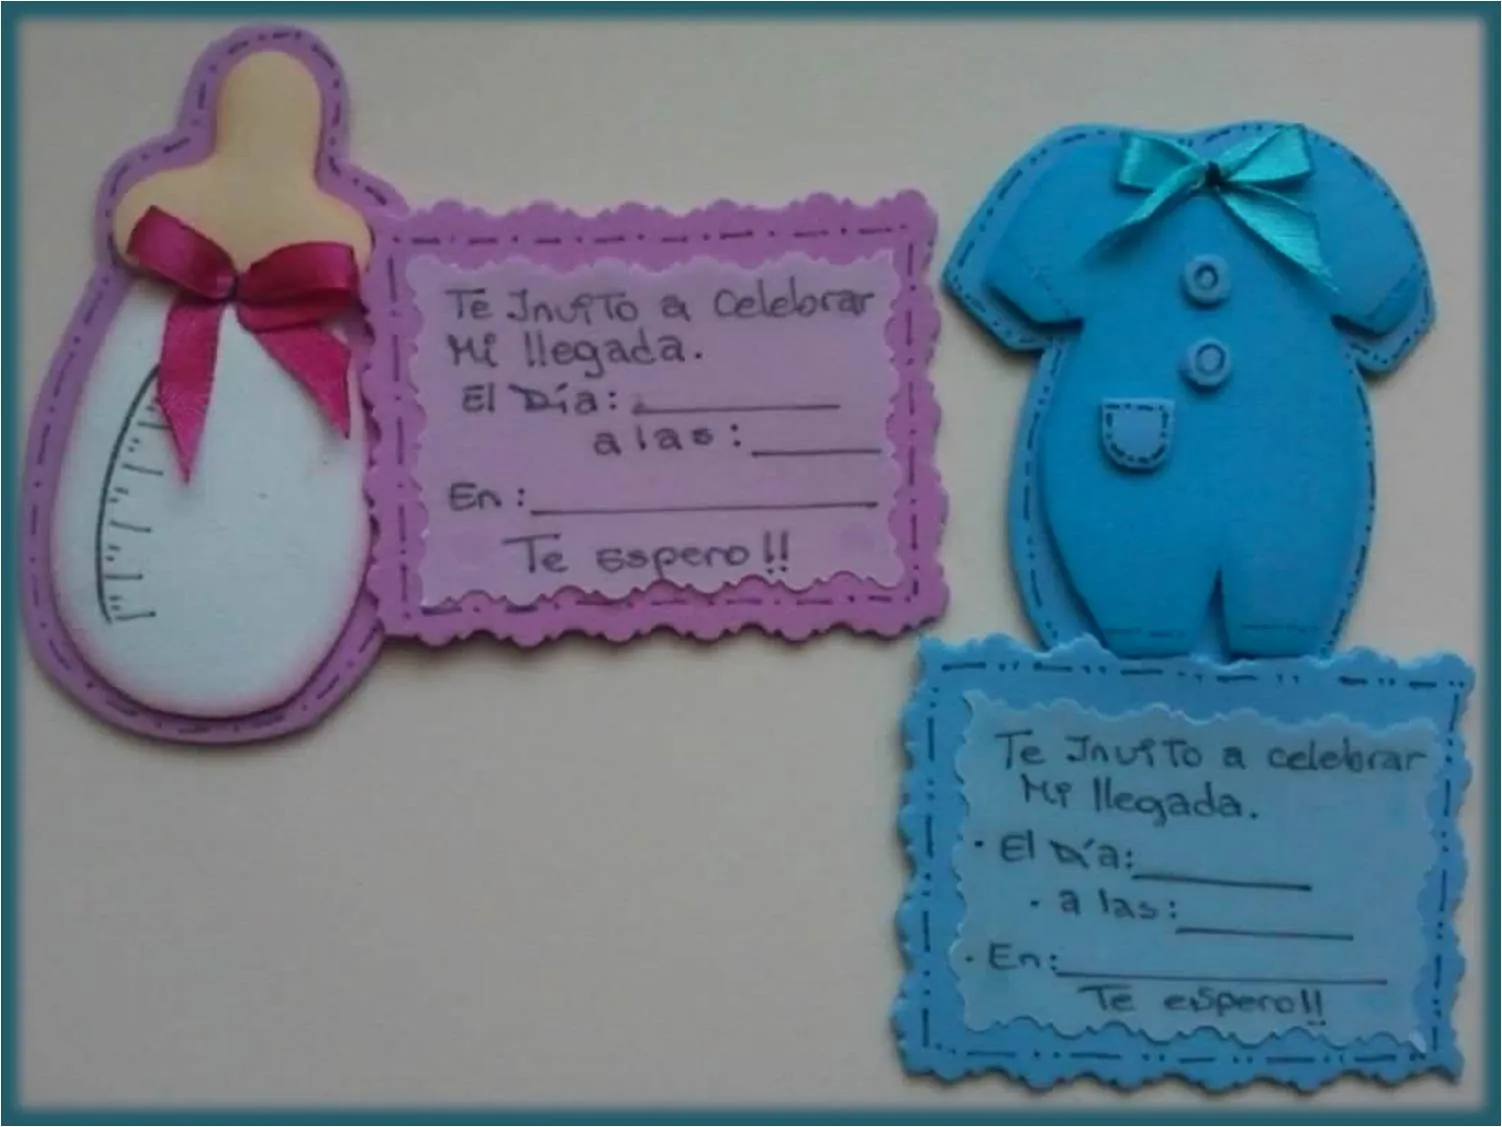 Imagenes de invitaciónes para baby shower en goma eva - Imagui